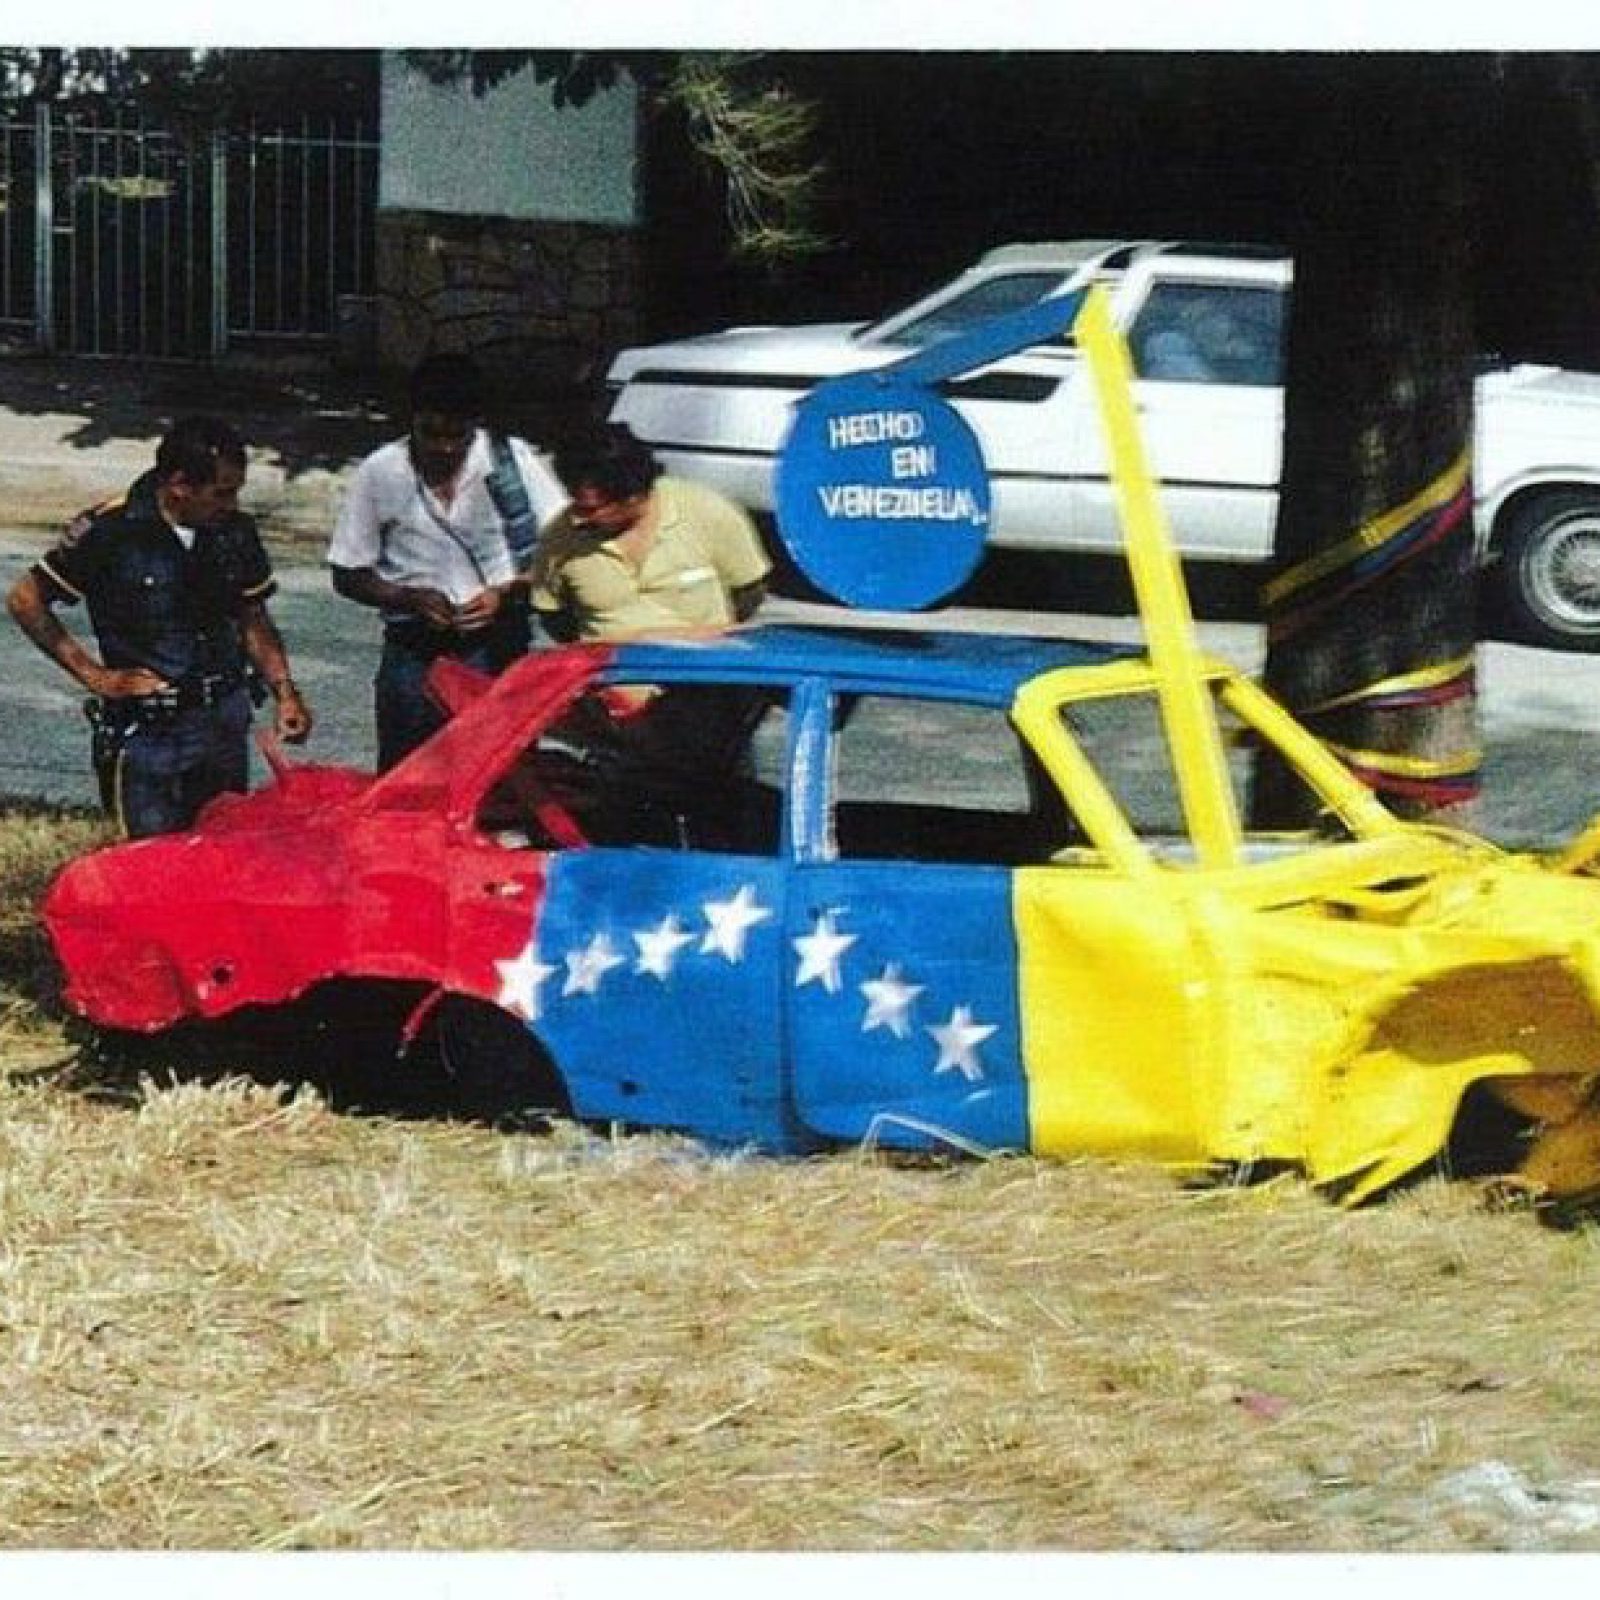 Juan Loyola, intervención con bandera venezolana sobre auto abandonado, Caracas,1980